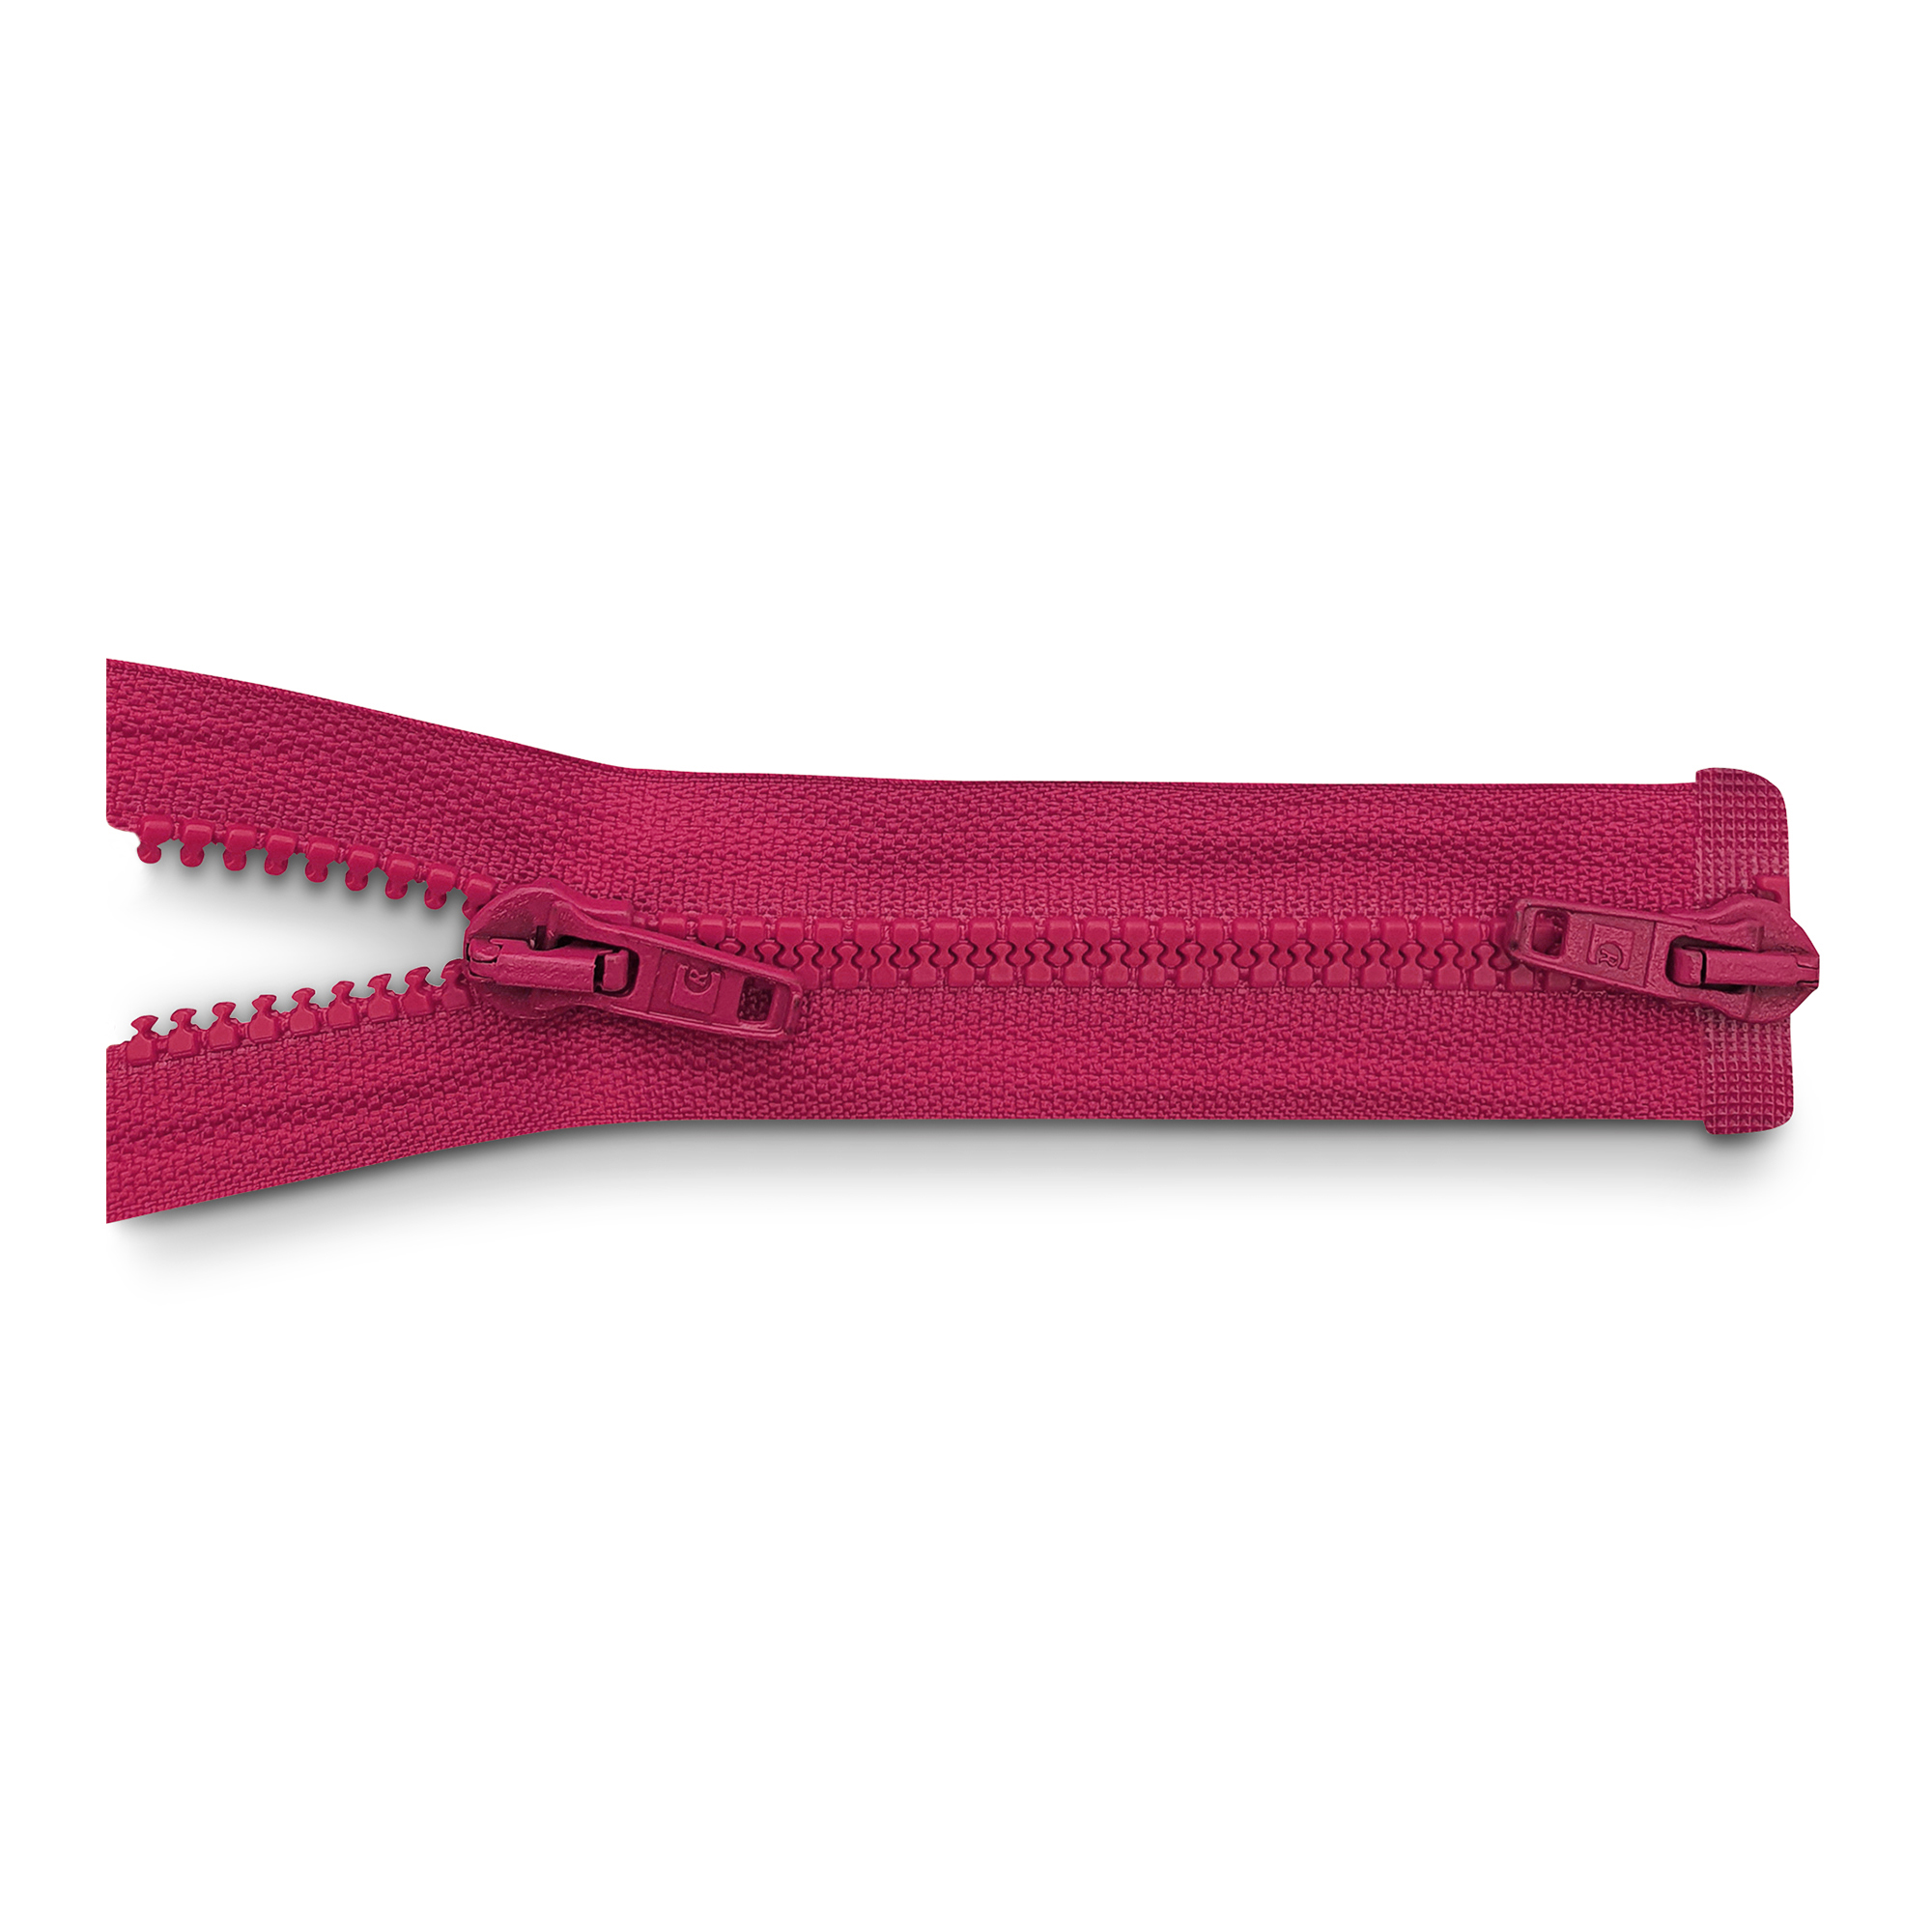 RV 100cm, 2-Wege, K.stoff Zähne breit, pink